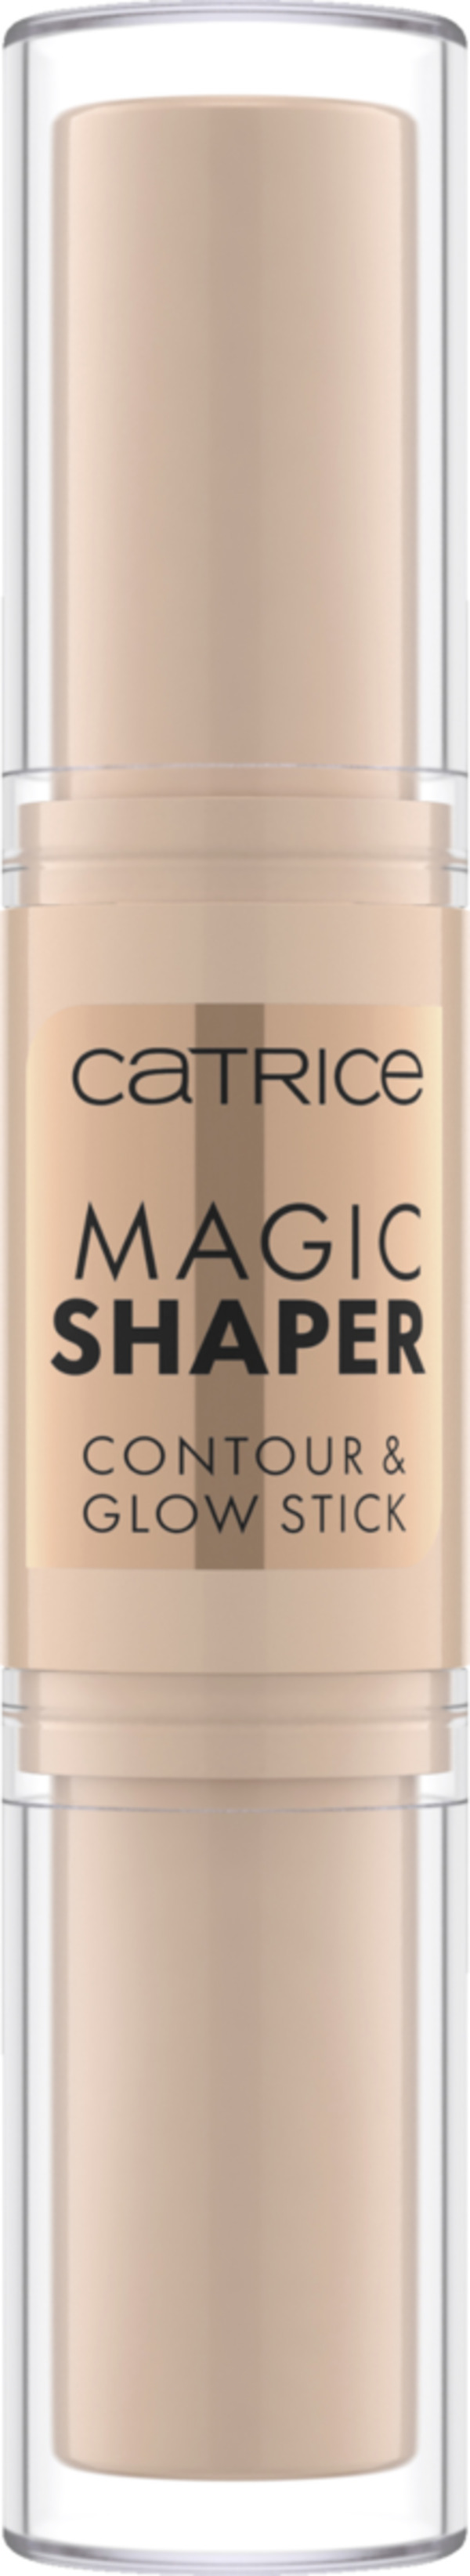 Bild 1 von Catrice Magic Shaper Contour & Glow Stick 020 Medium